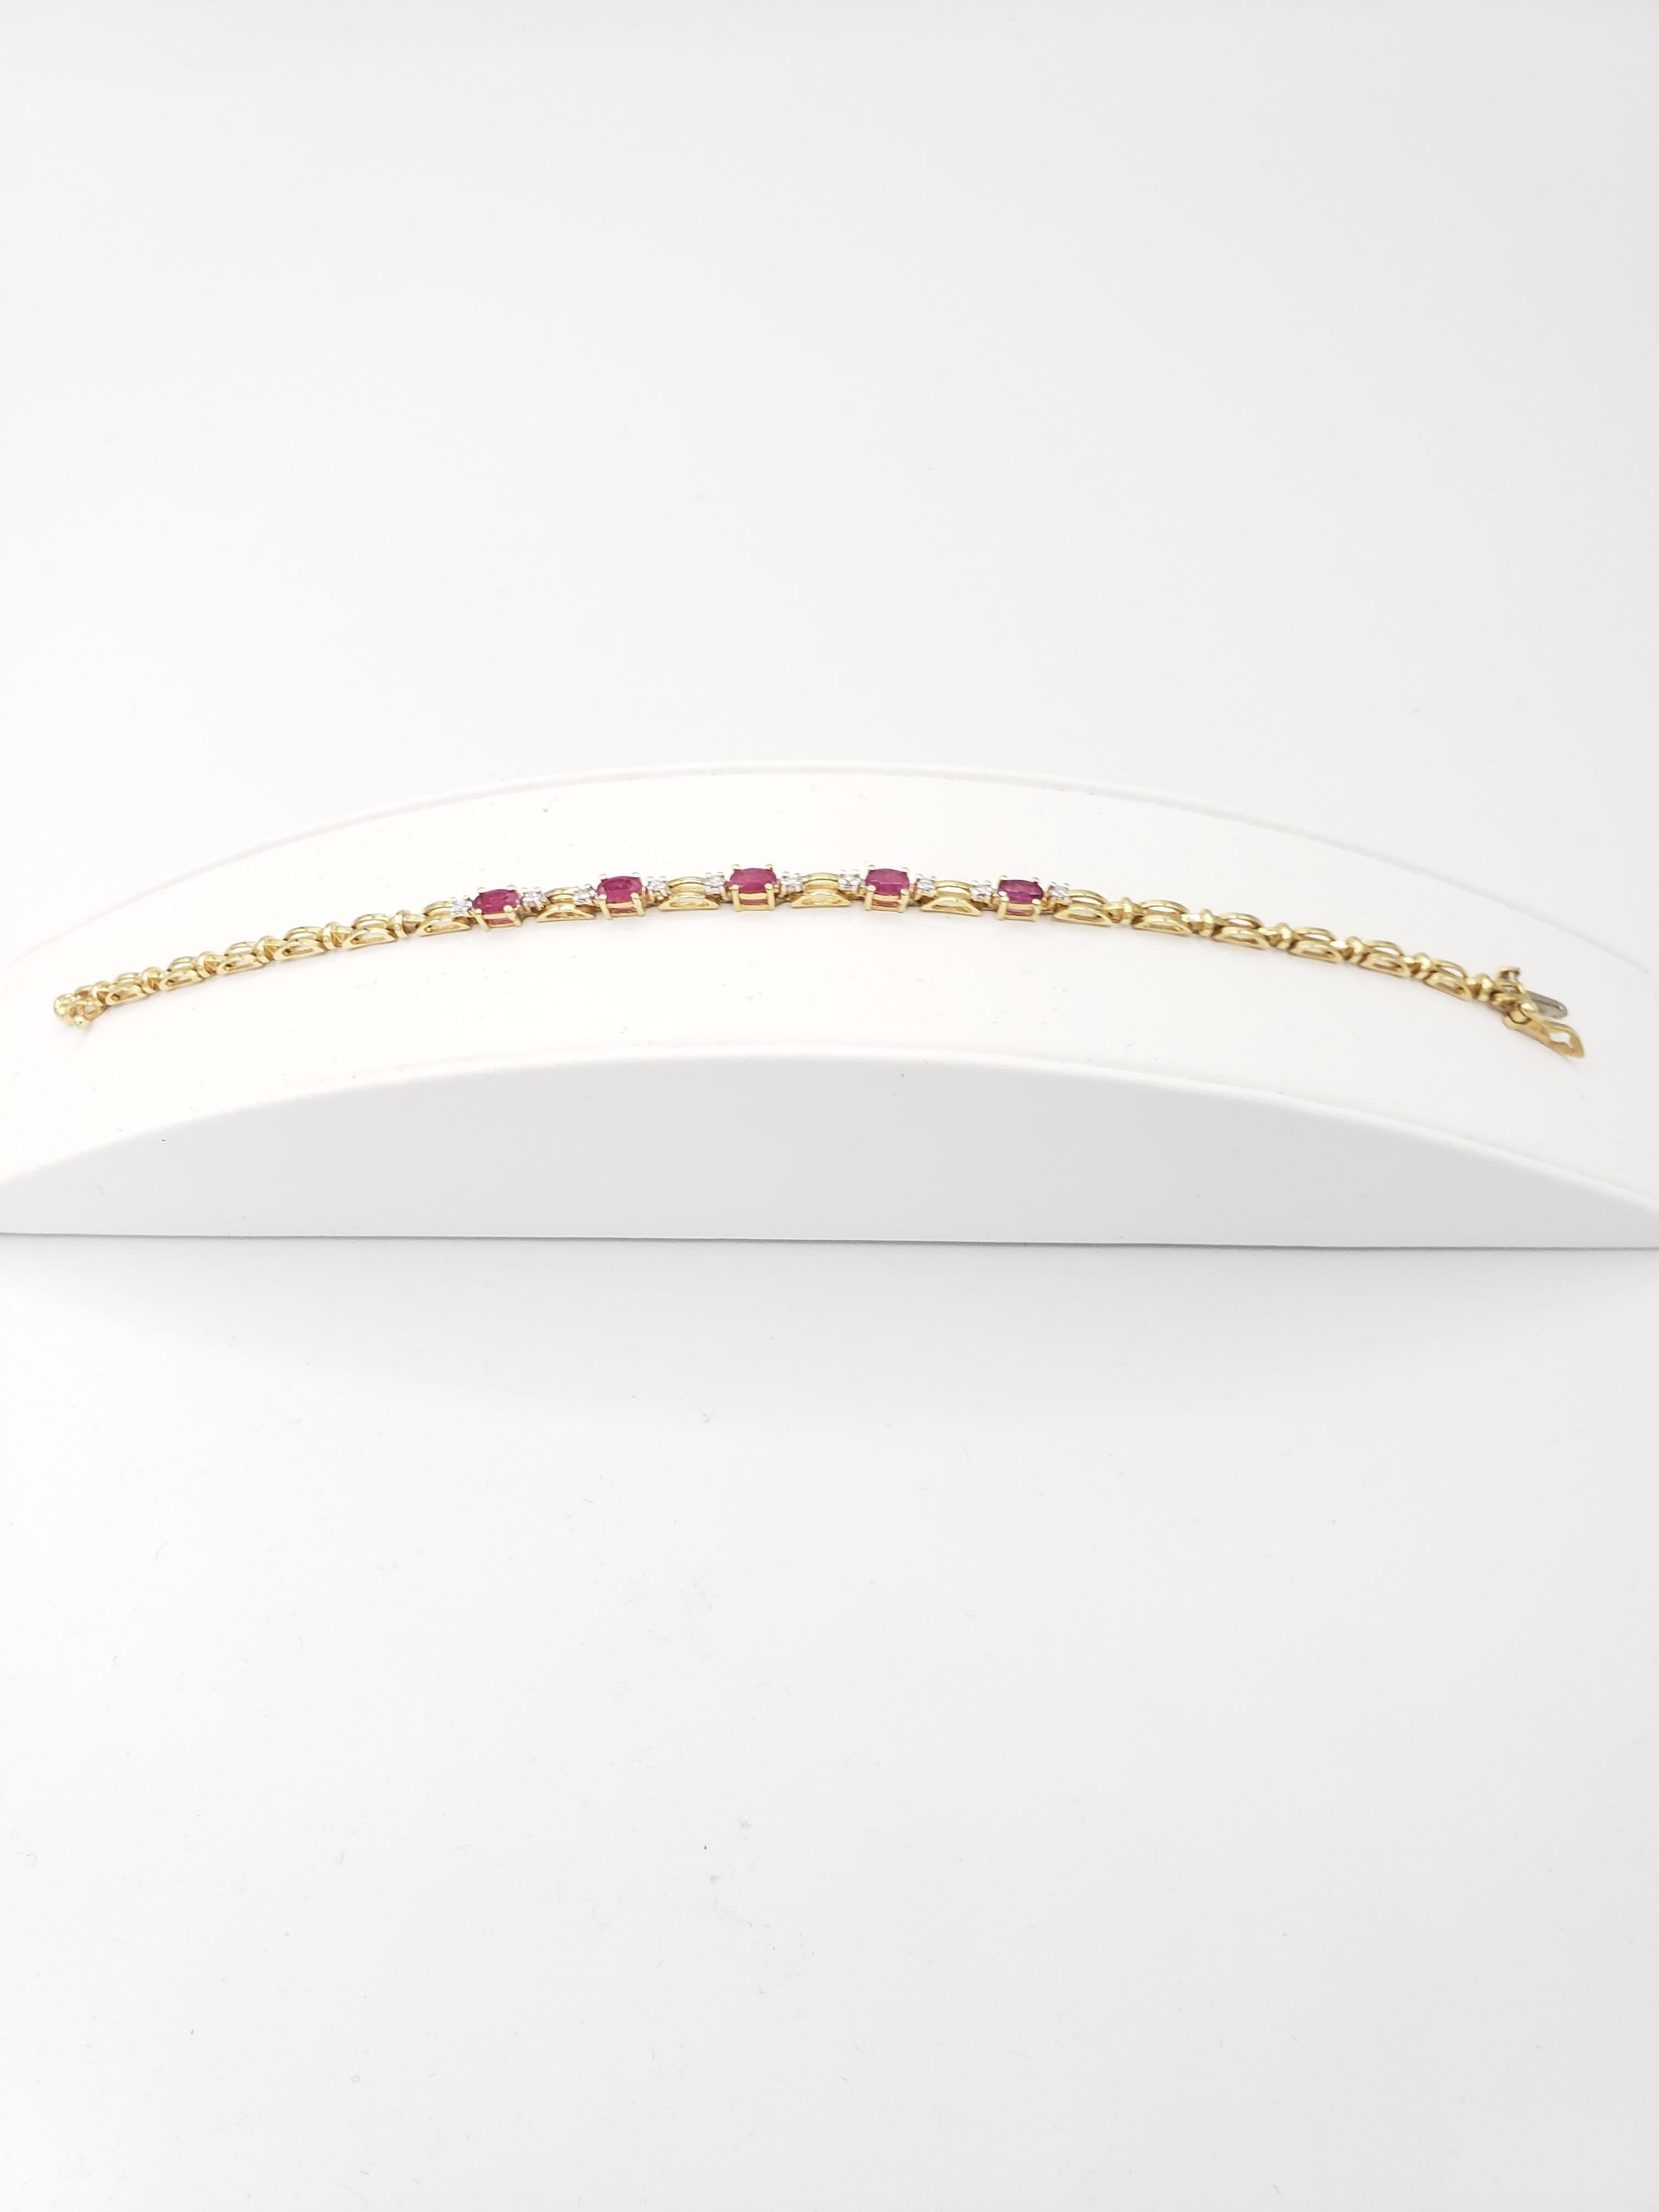 Ce magnifique bracelet de tennis est un véritable bijou. Fabriqué en or jaune massif 14k, il est orné de rubis naturels et de diamants qui brillent à chaque mouvement. La longueur du bracelet est de 7 3/8 pouces.

Le magnifique or jaune complète la